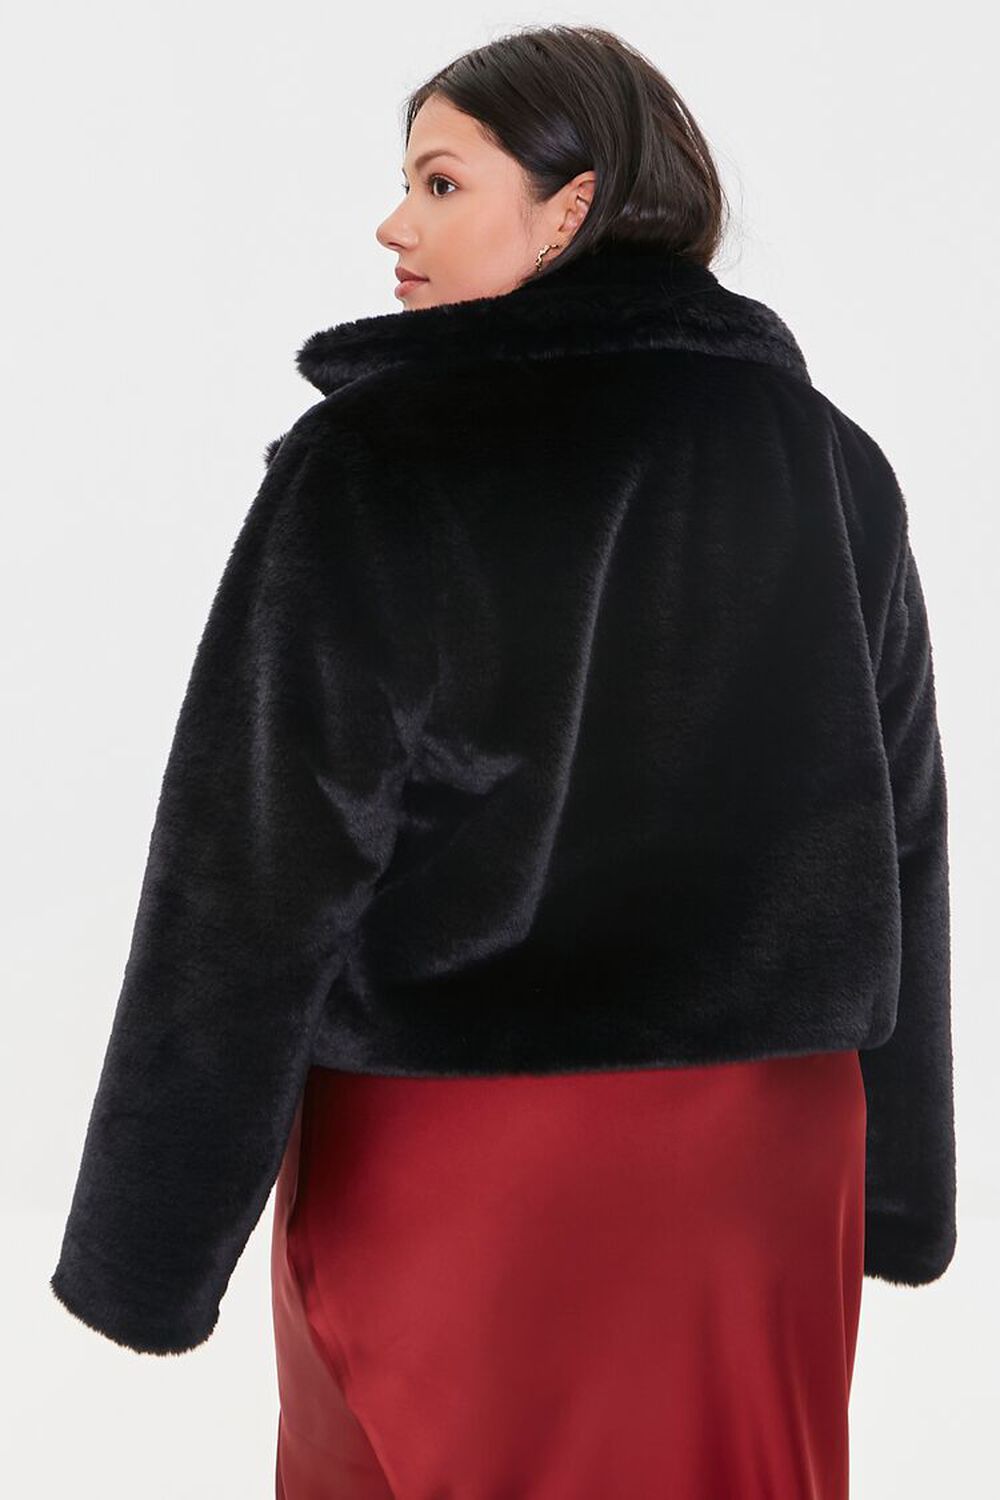 BLACK Plus Size Faux Fur Coat, image 3